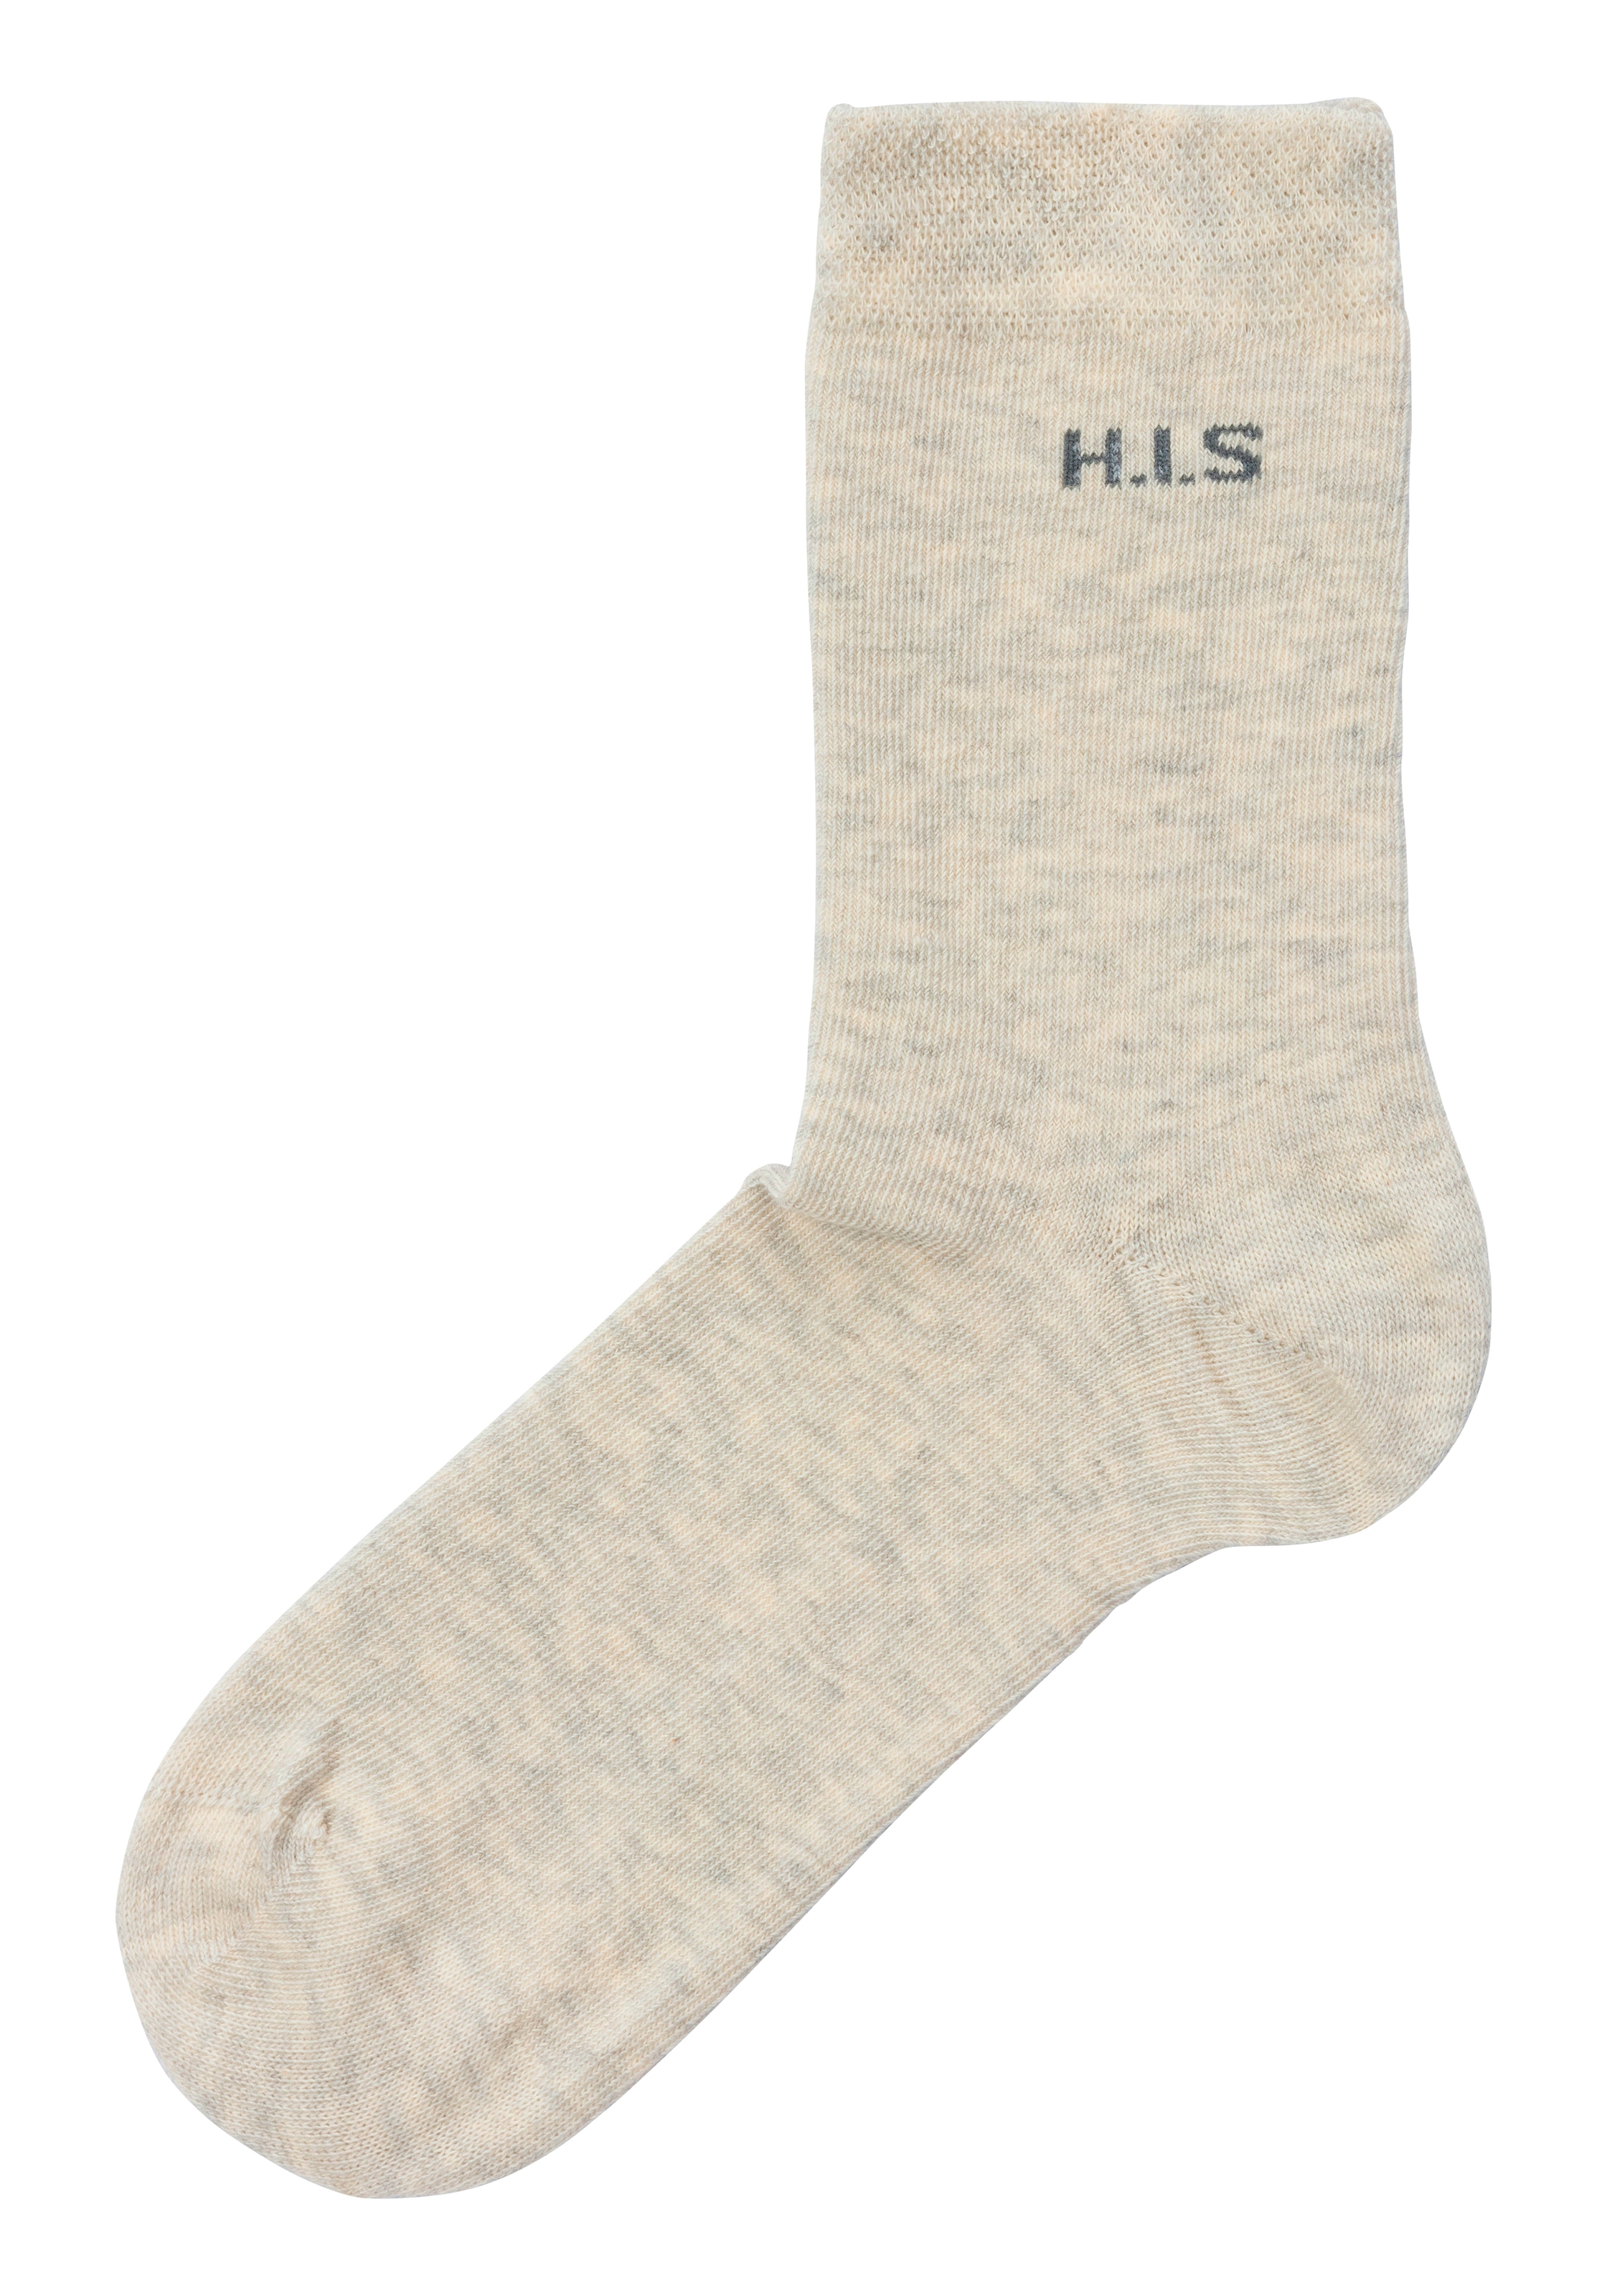 Socken, auf ohne kaufen einschneidendes Bündchen H.I.S Paar), (4 Raten